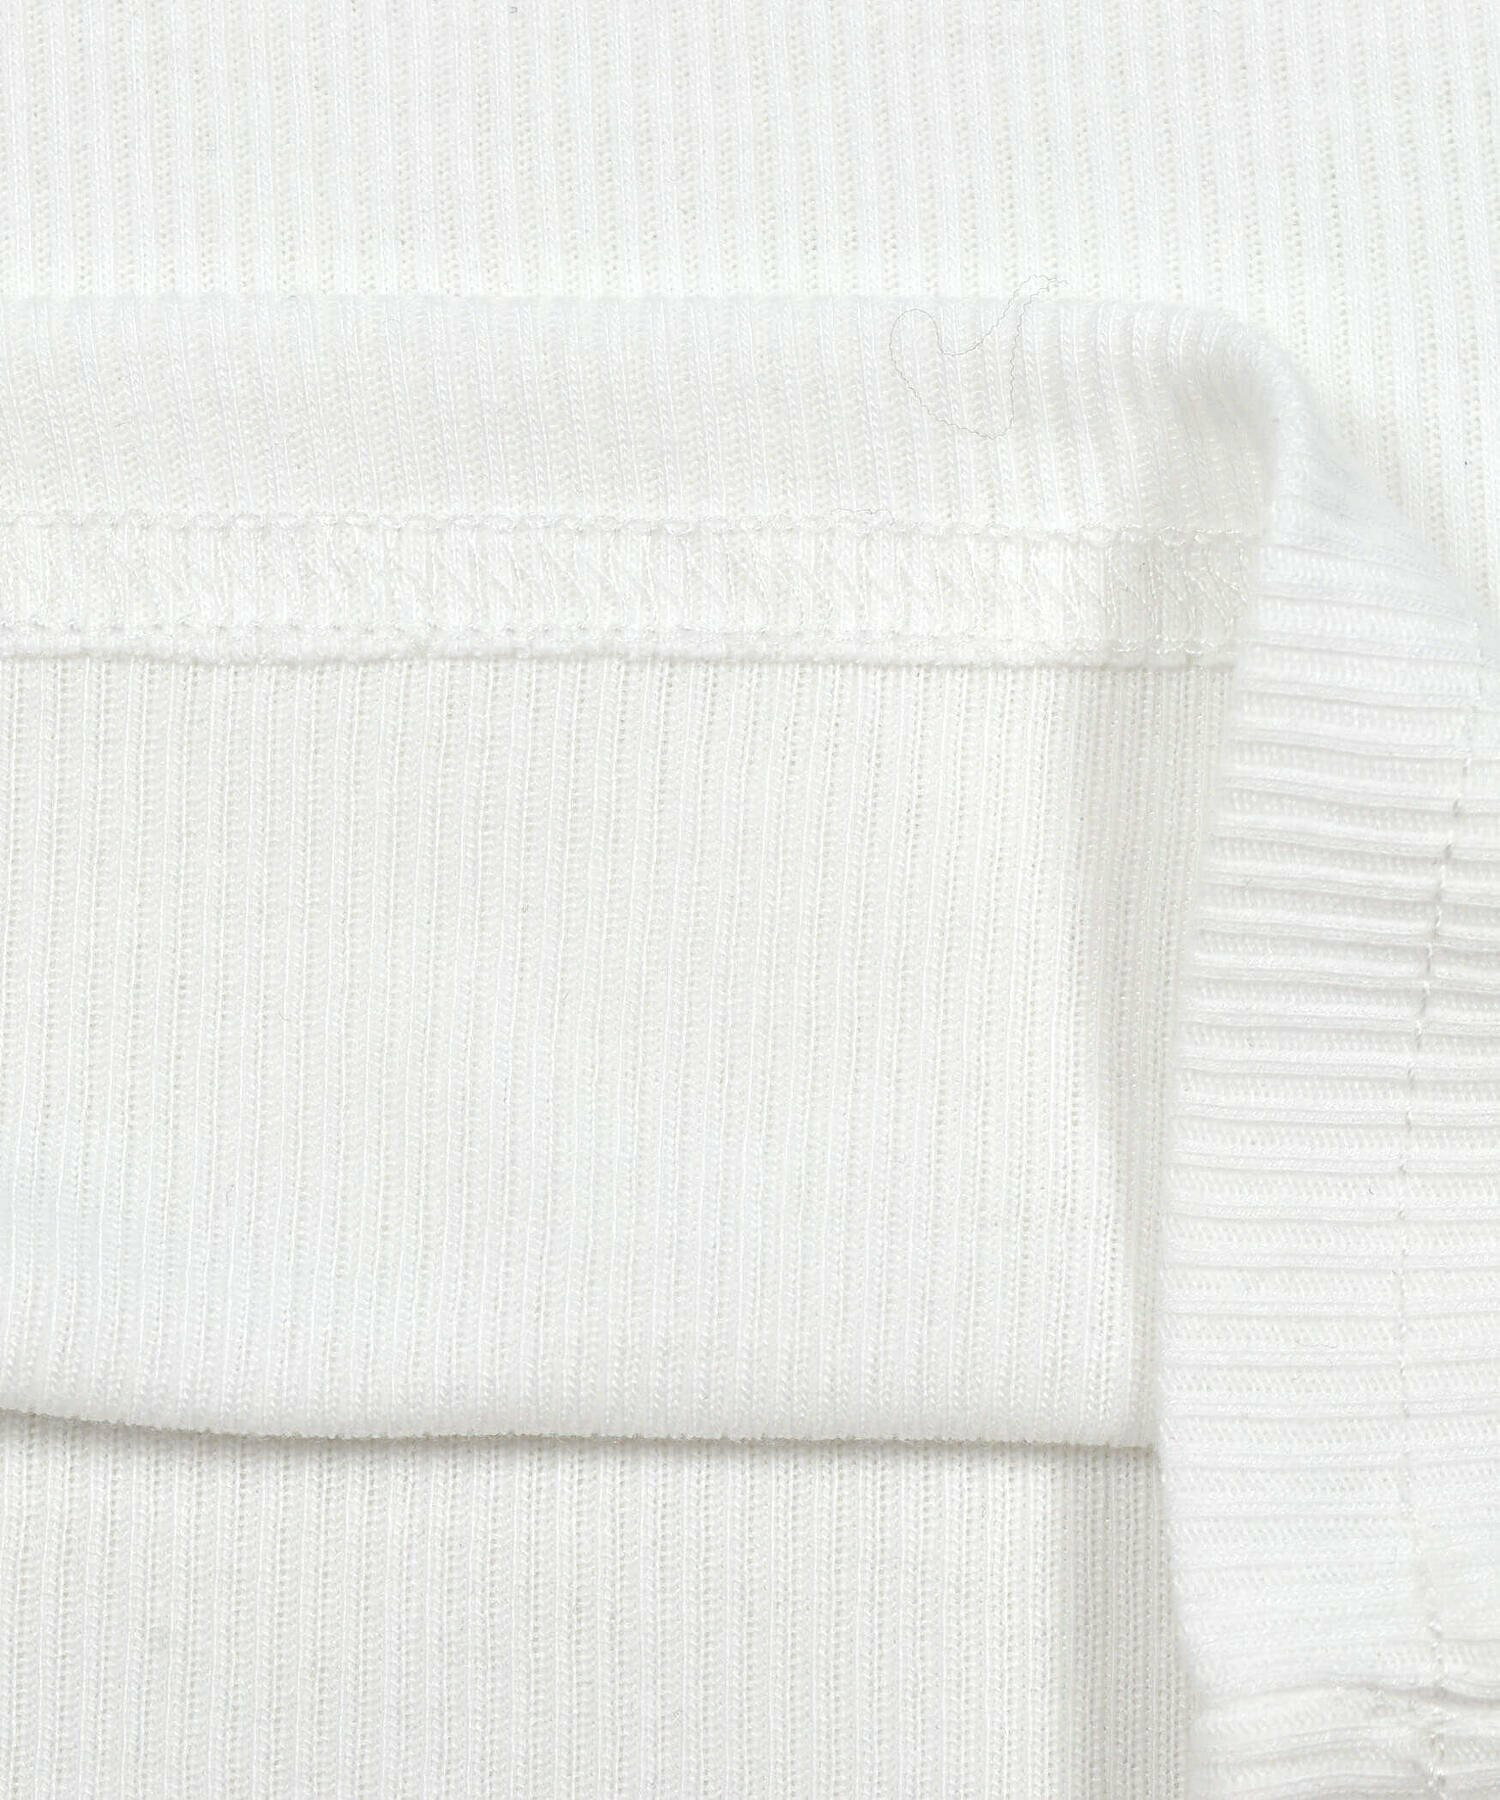 【 ニコ☆プチ 掲載 】ビスチェ&Tシャツ&インパンツ付きスカート3点セット(130~160cm)